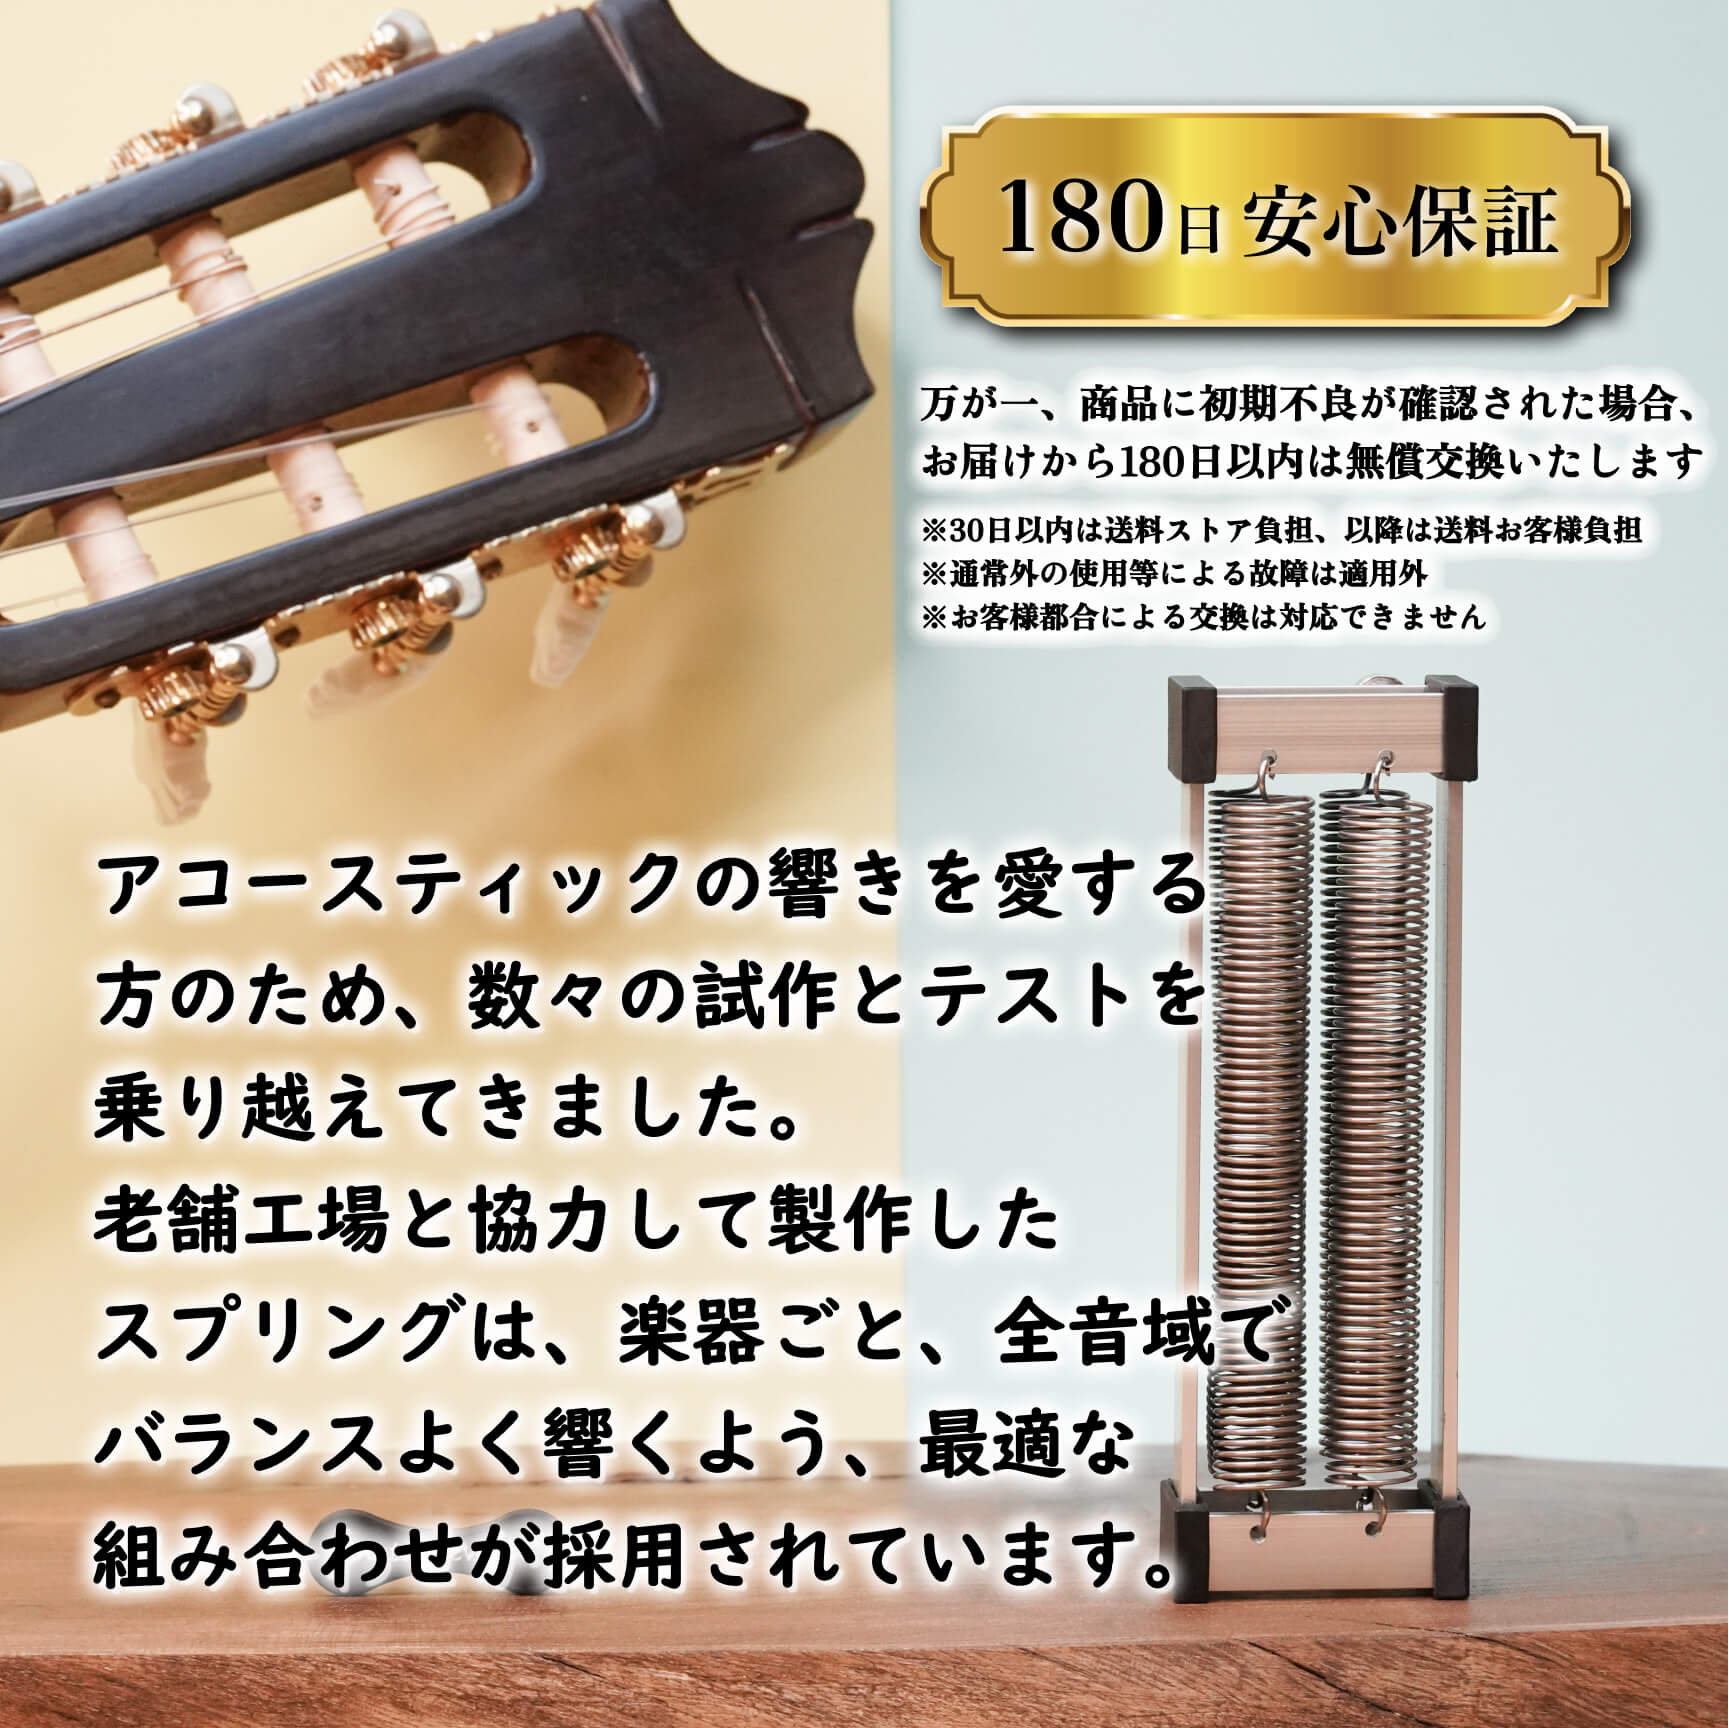 クラシック/ガットギター用 natu-reverb CG-1n